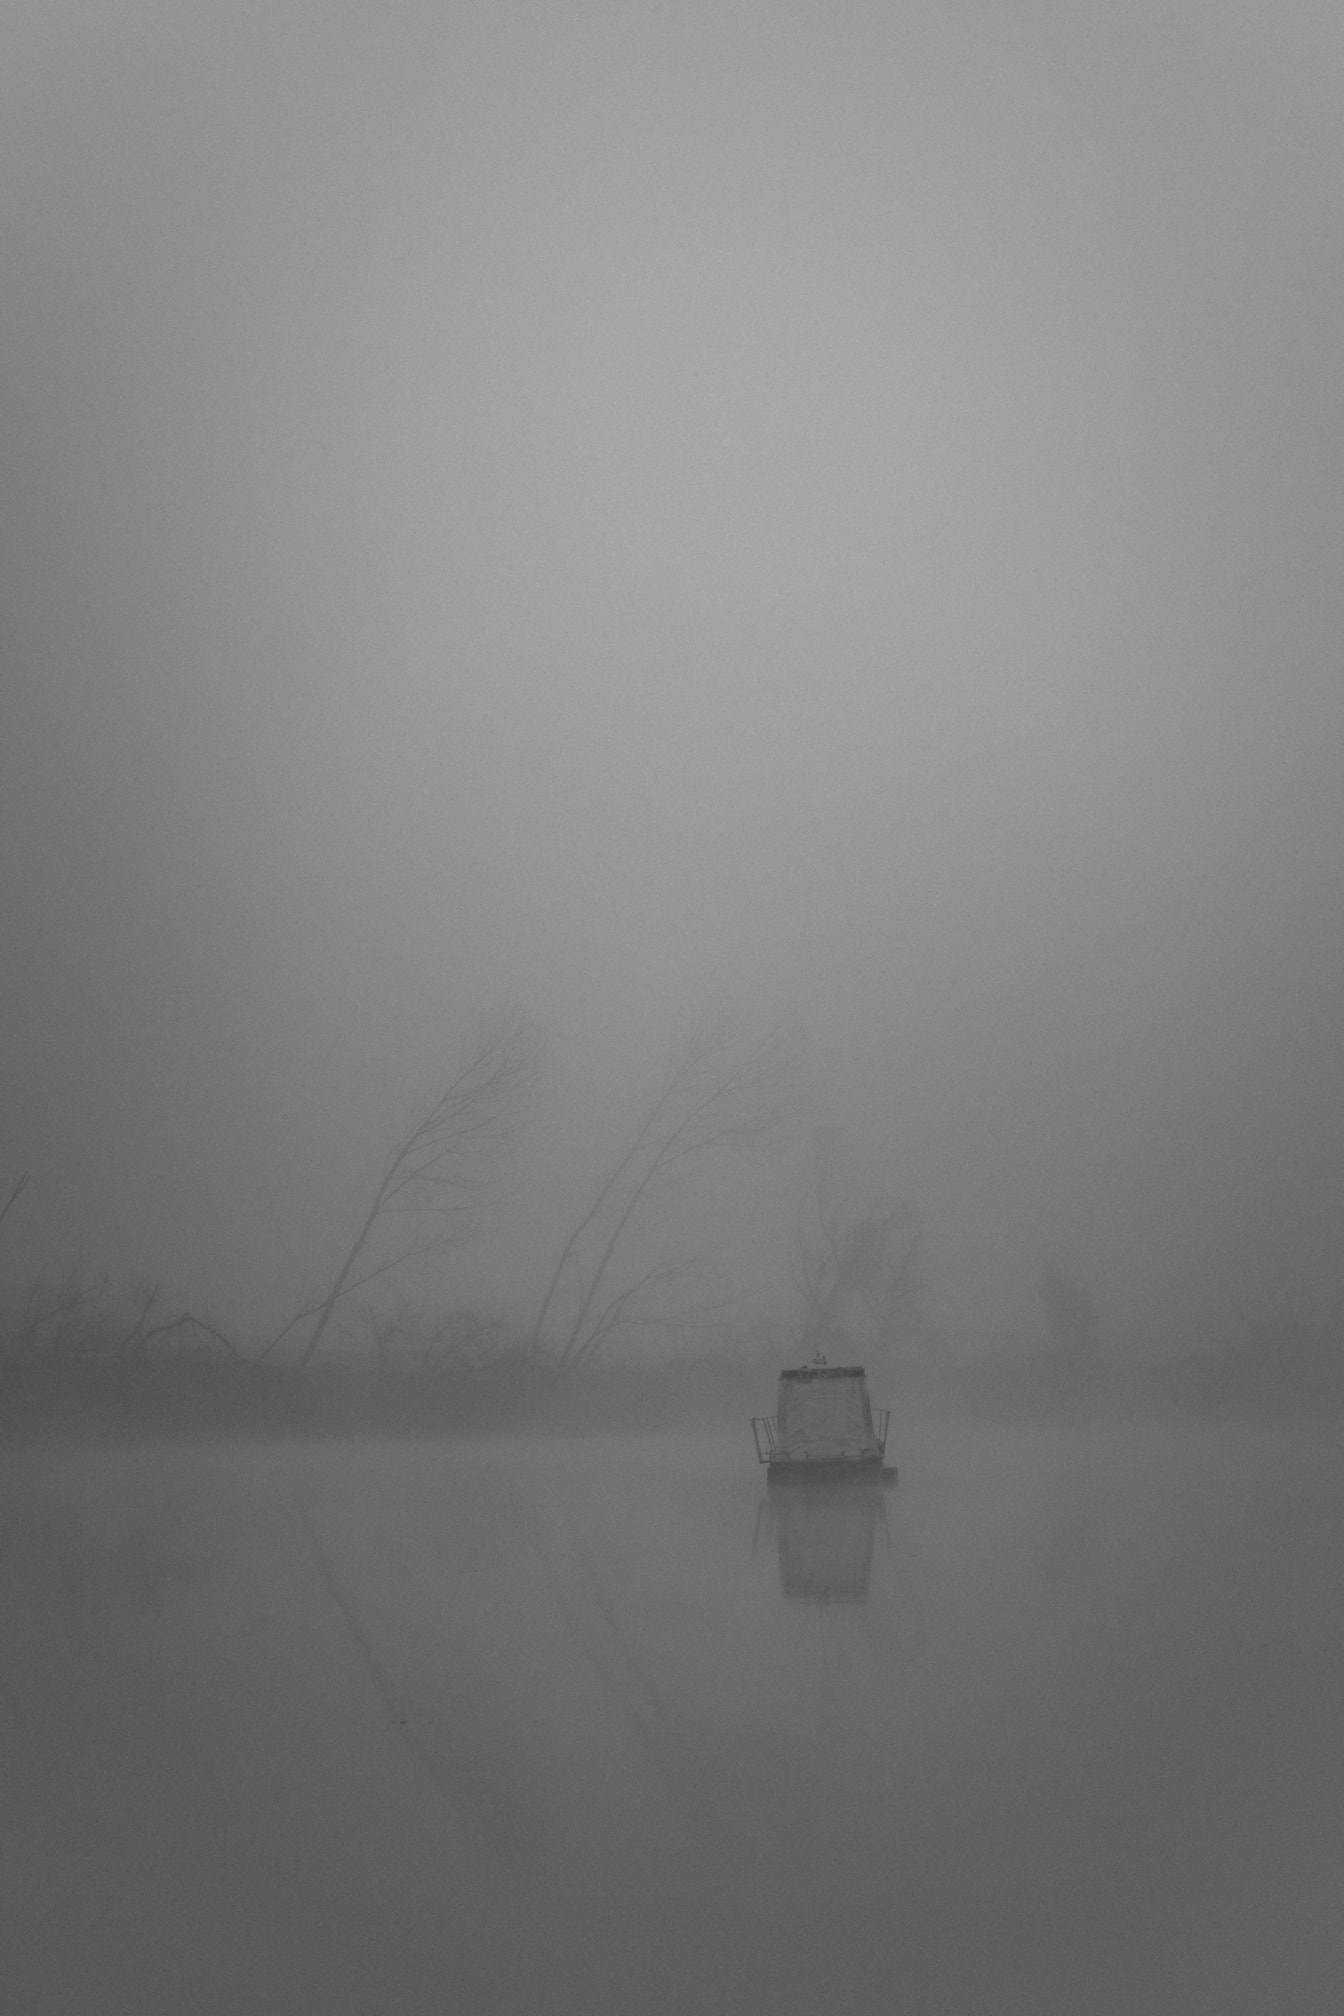 Foto di paesaggio in bianco e nero orientata verticalmente di una barca nella nebbia